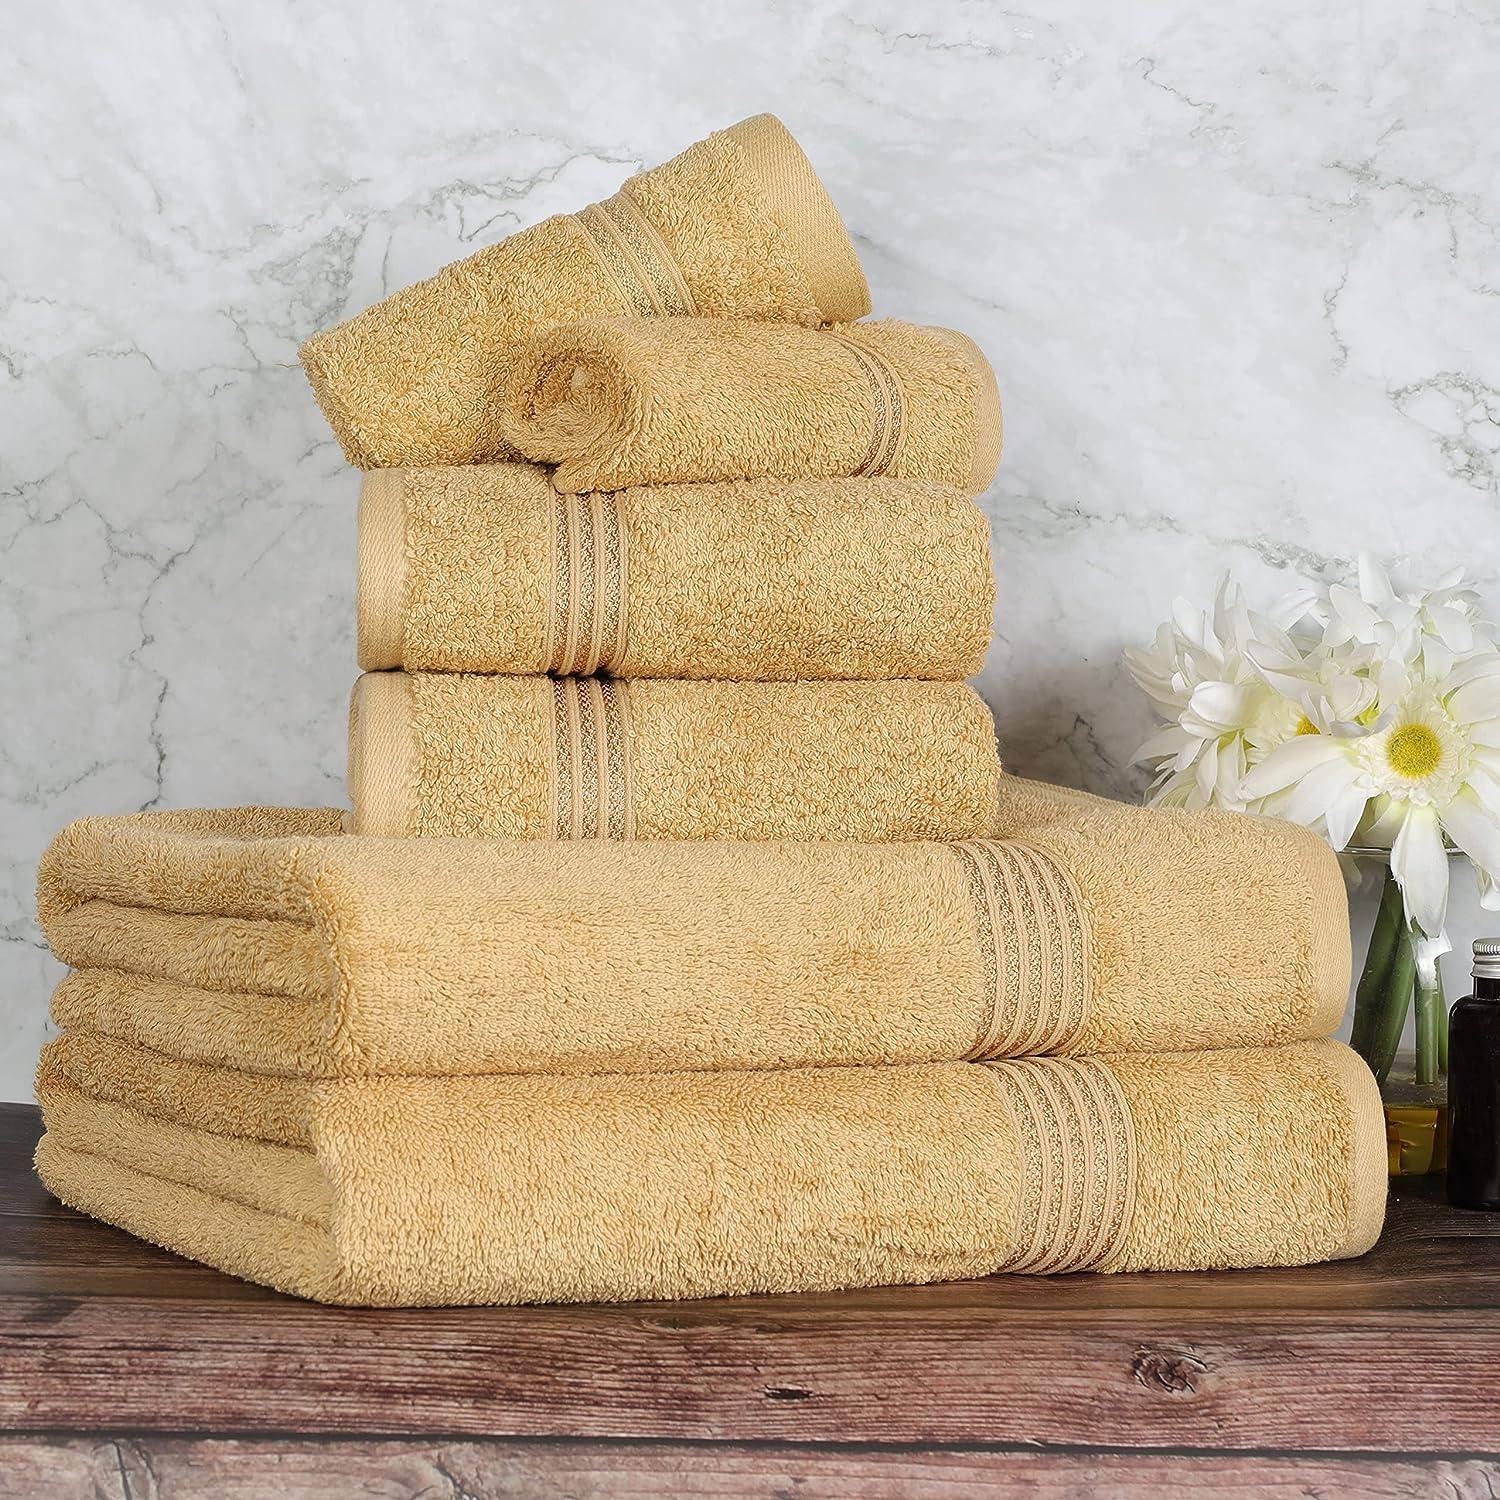 Luxurious Hotel Style Plush Egyptian Cotton 6-Piece Towel Set